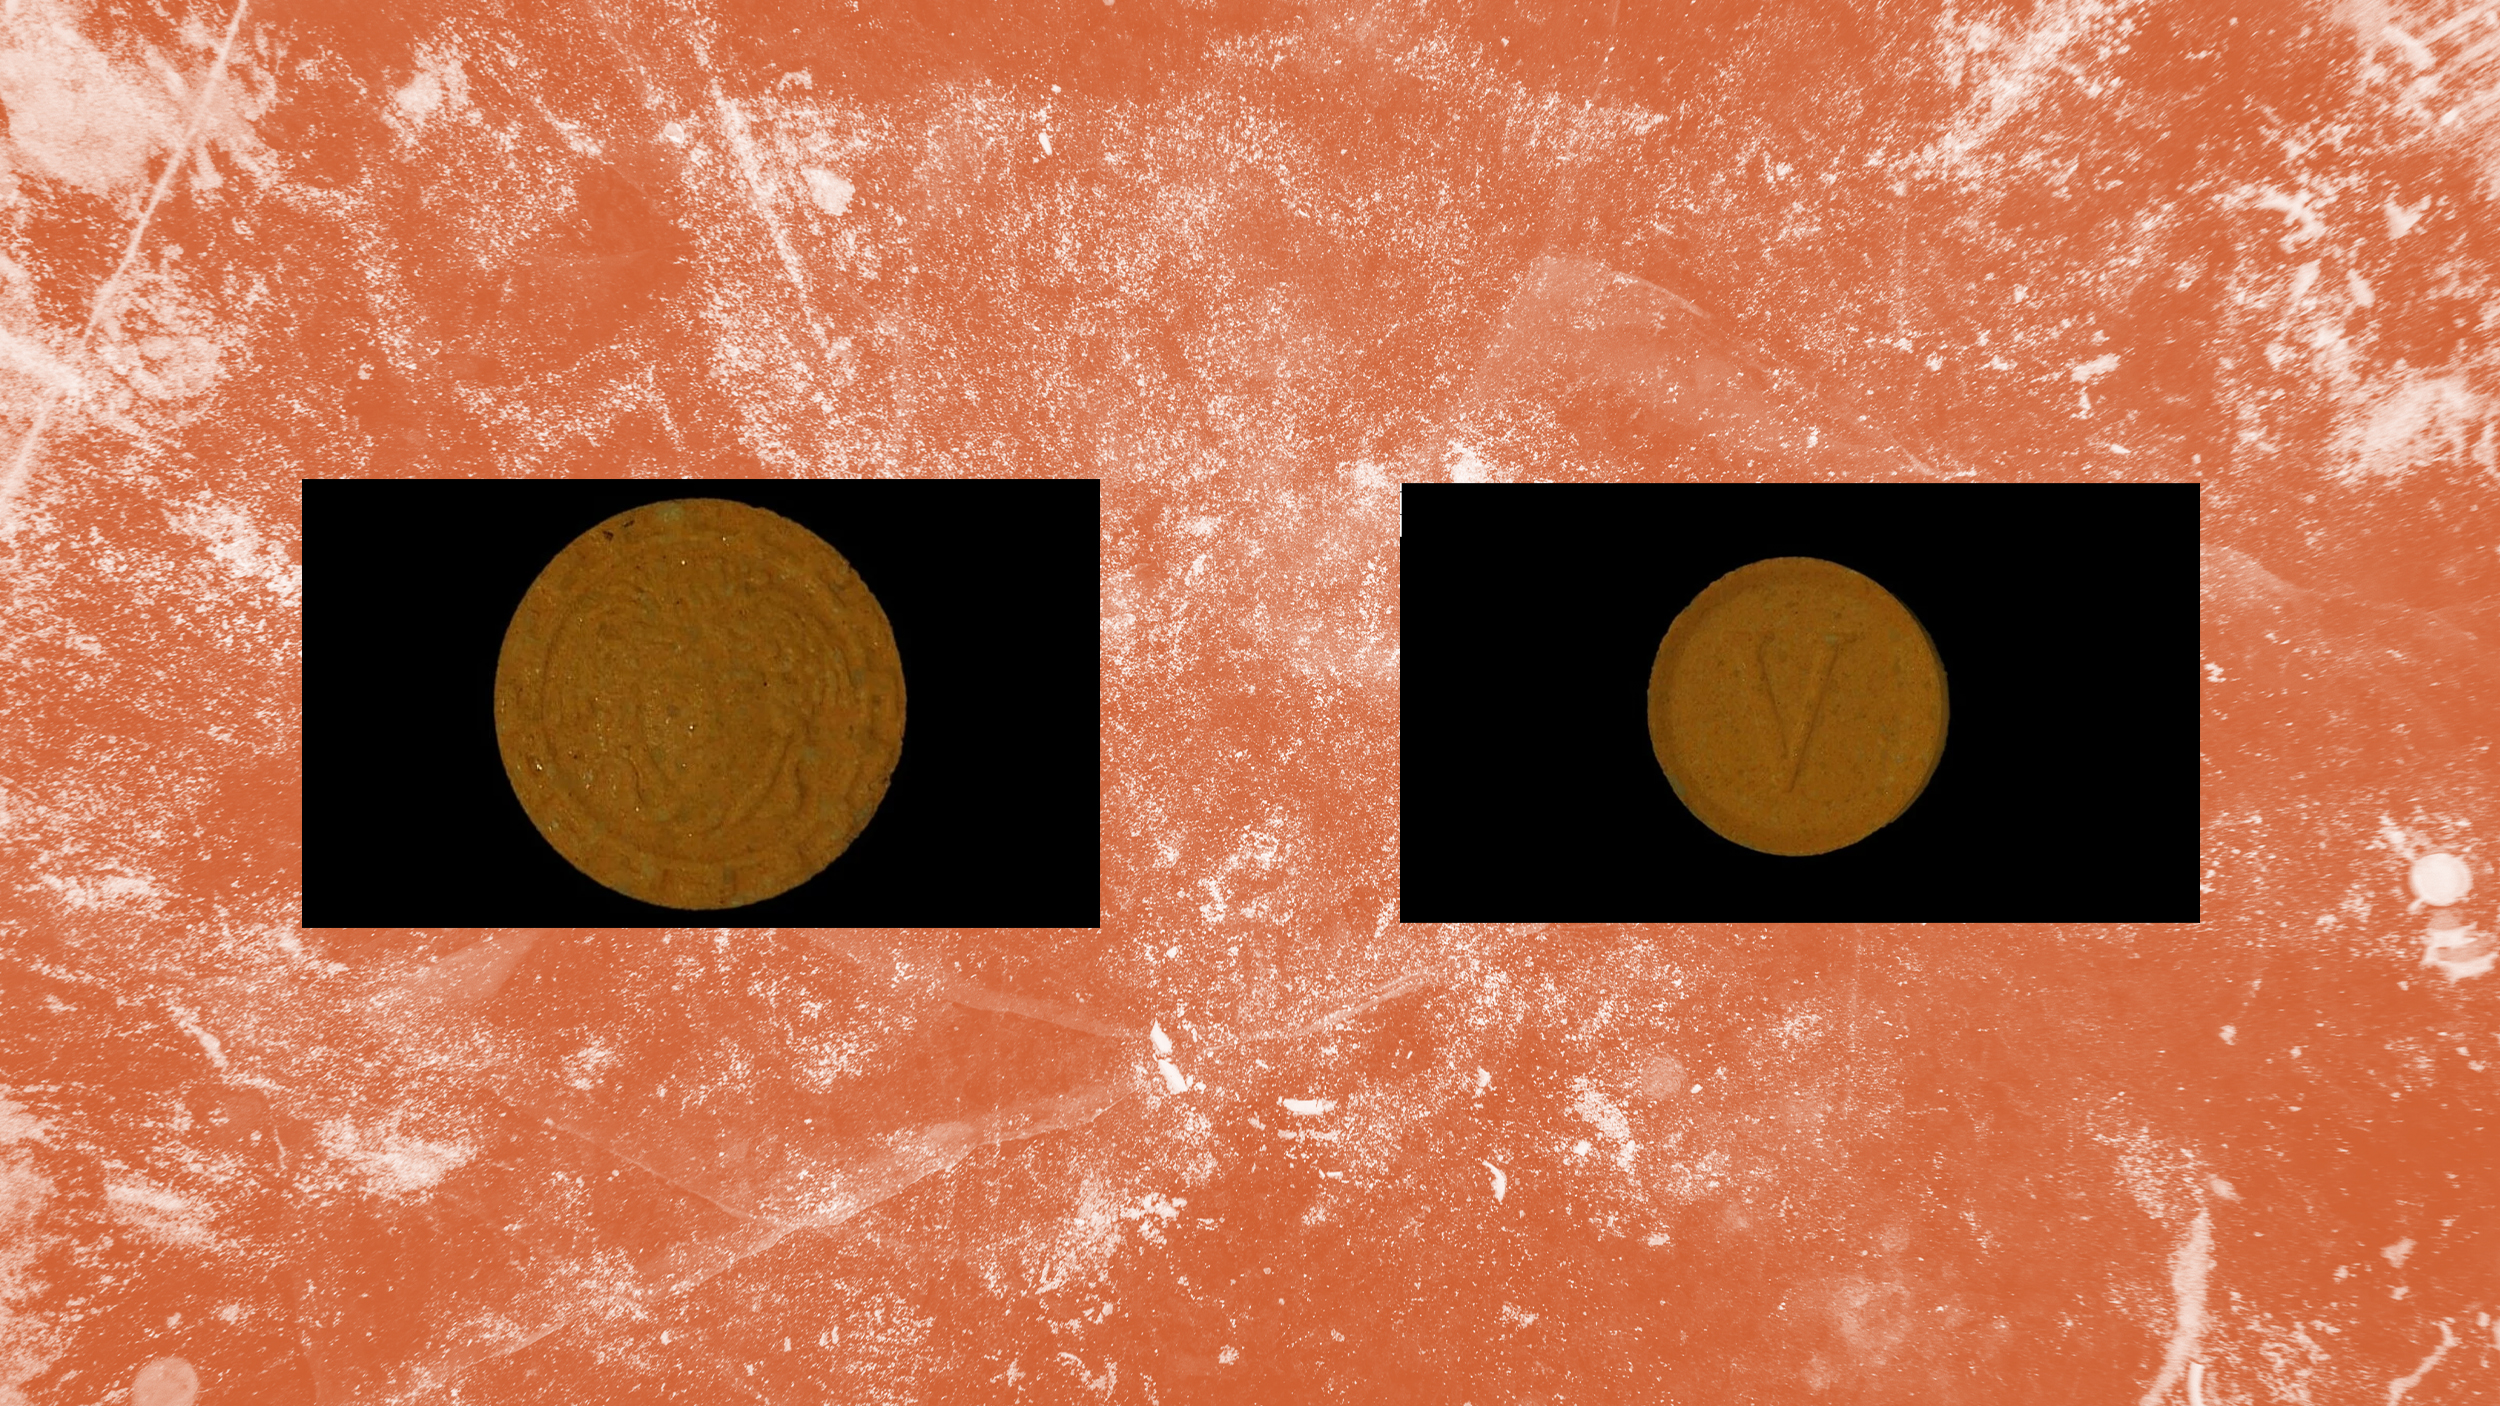 Eine orange kreisrunde Pille mit Versace-Logo auf orangen Hintergrund